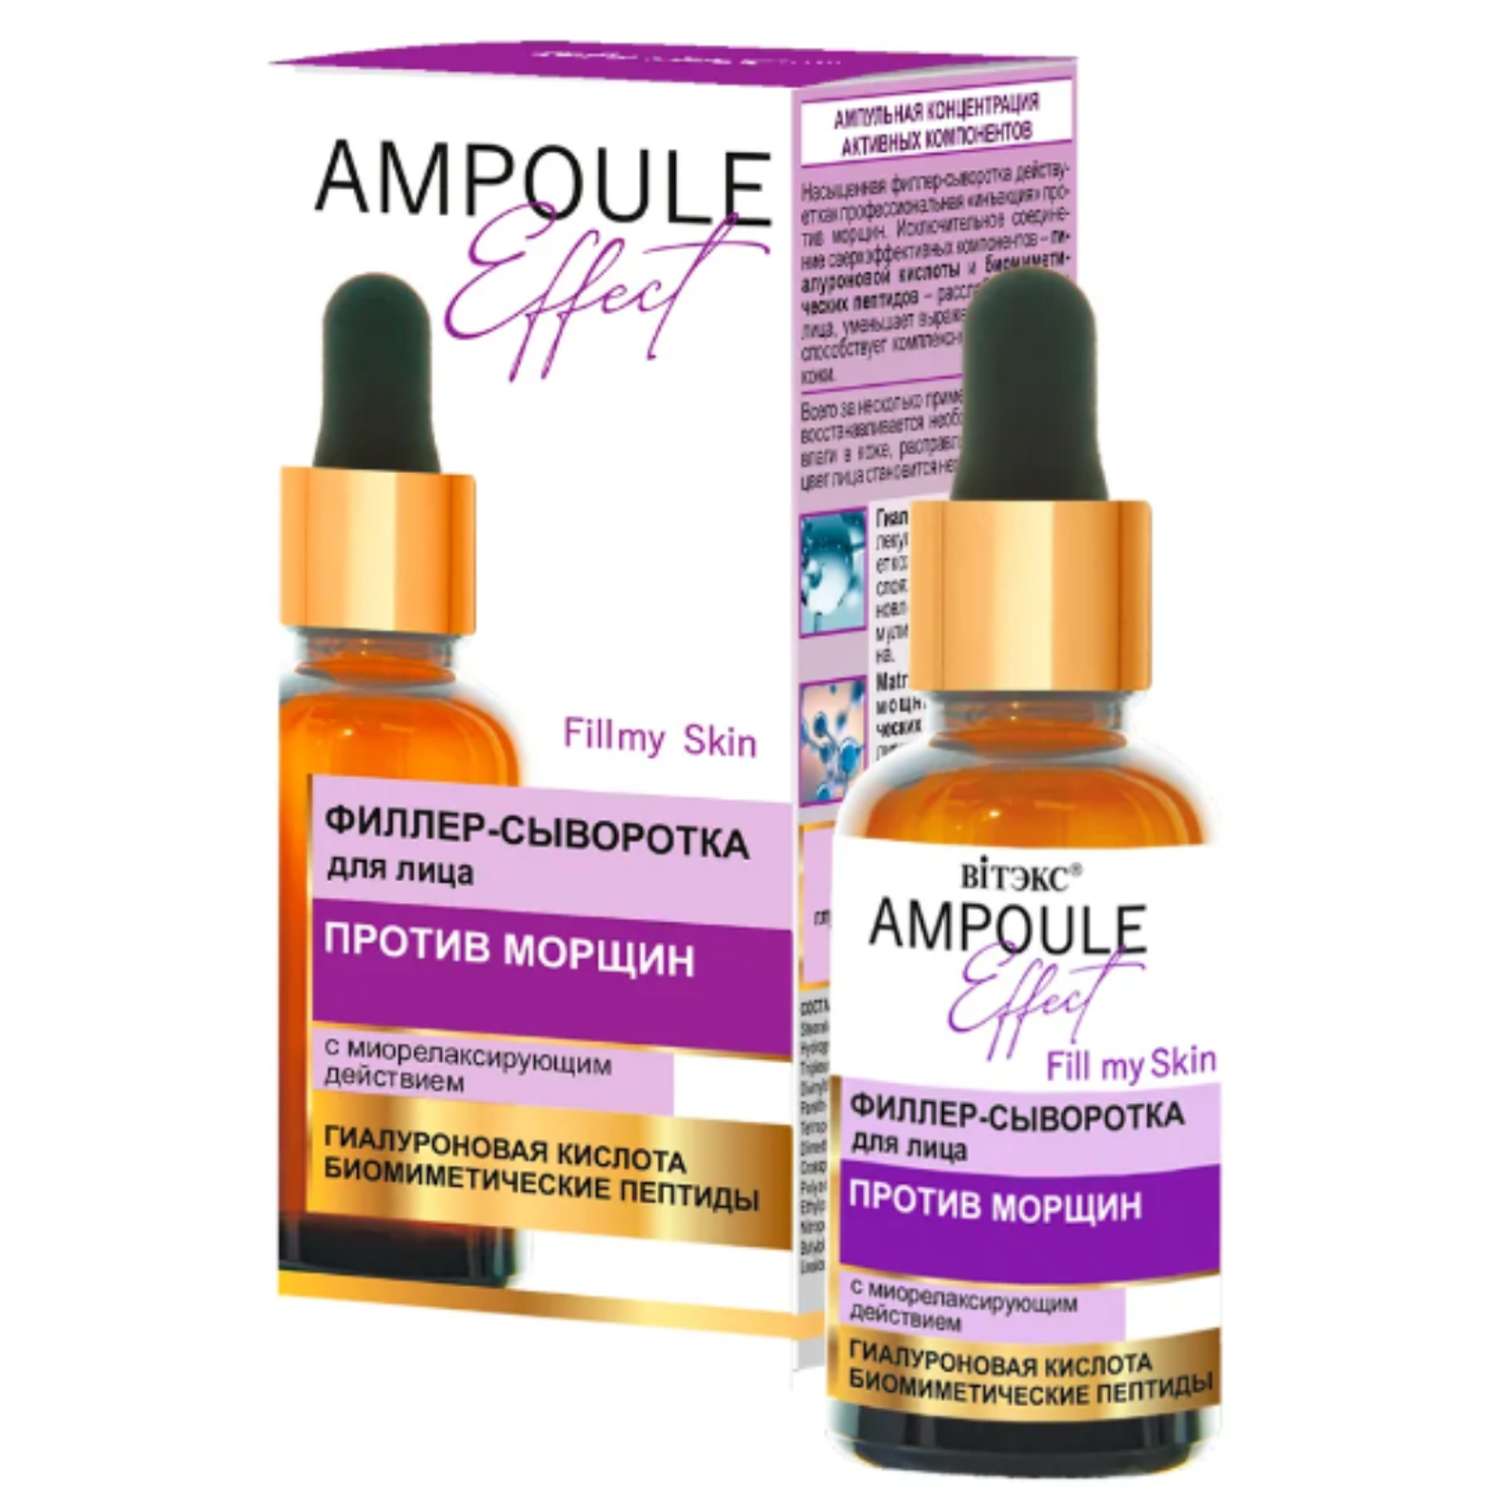 Сыворотка для лица ВИТЭКС филлер Ampoule Effect Против морщин с миорелаксирующим действием 30 мл - фото 2